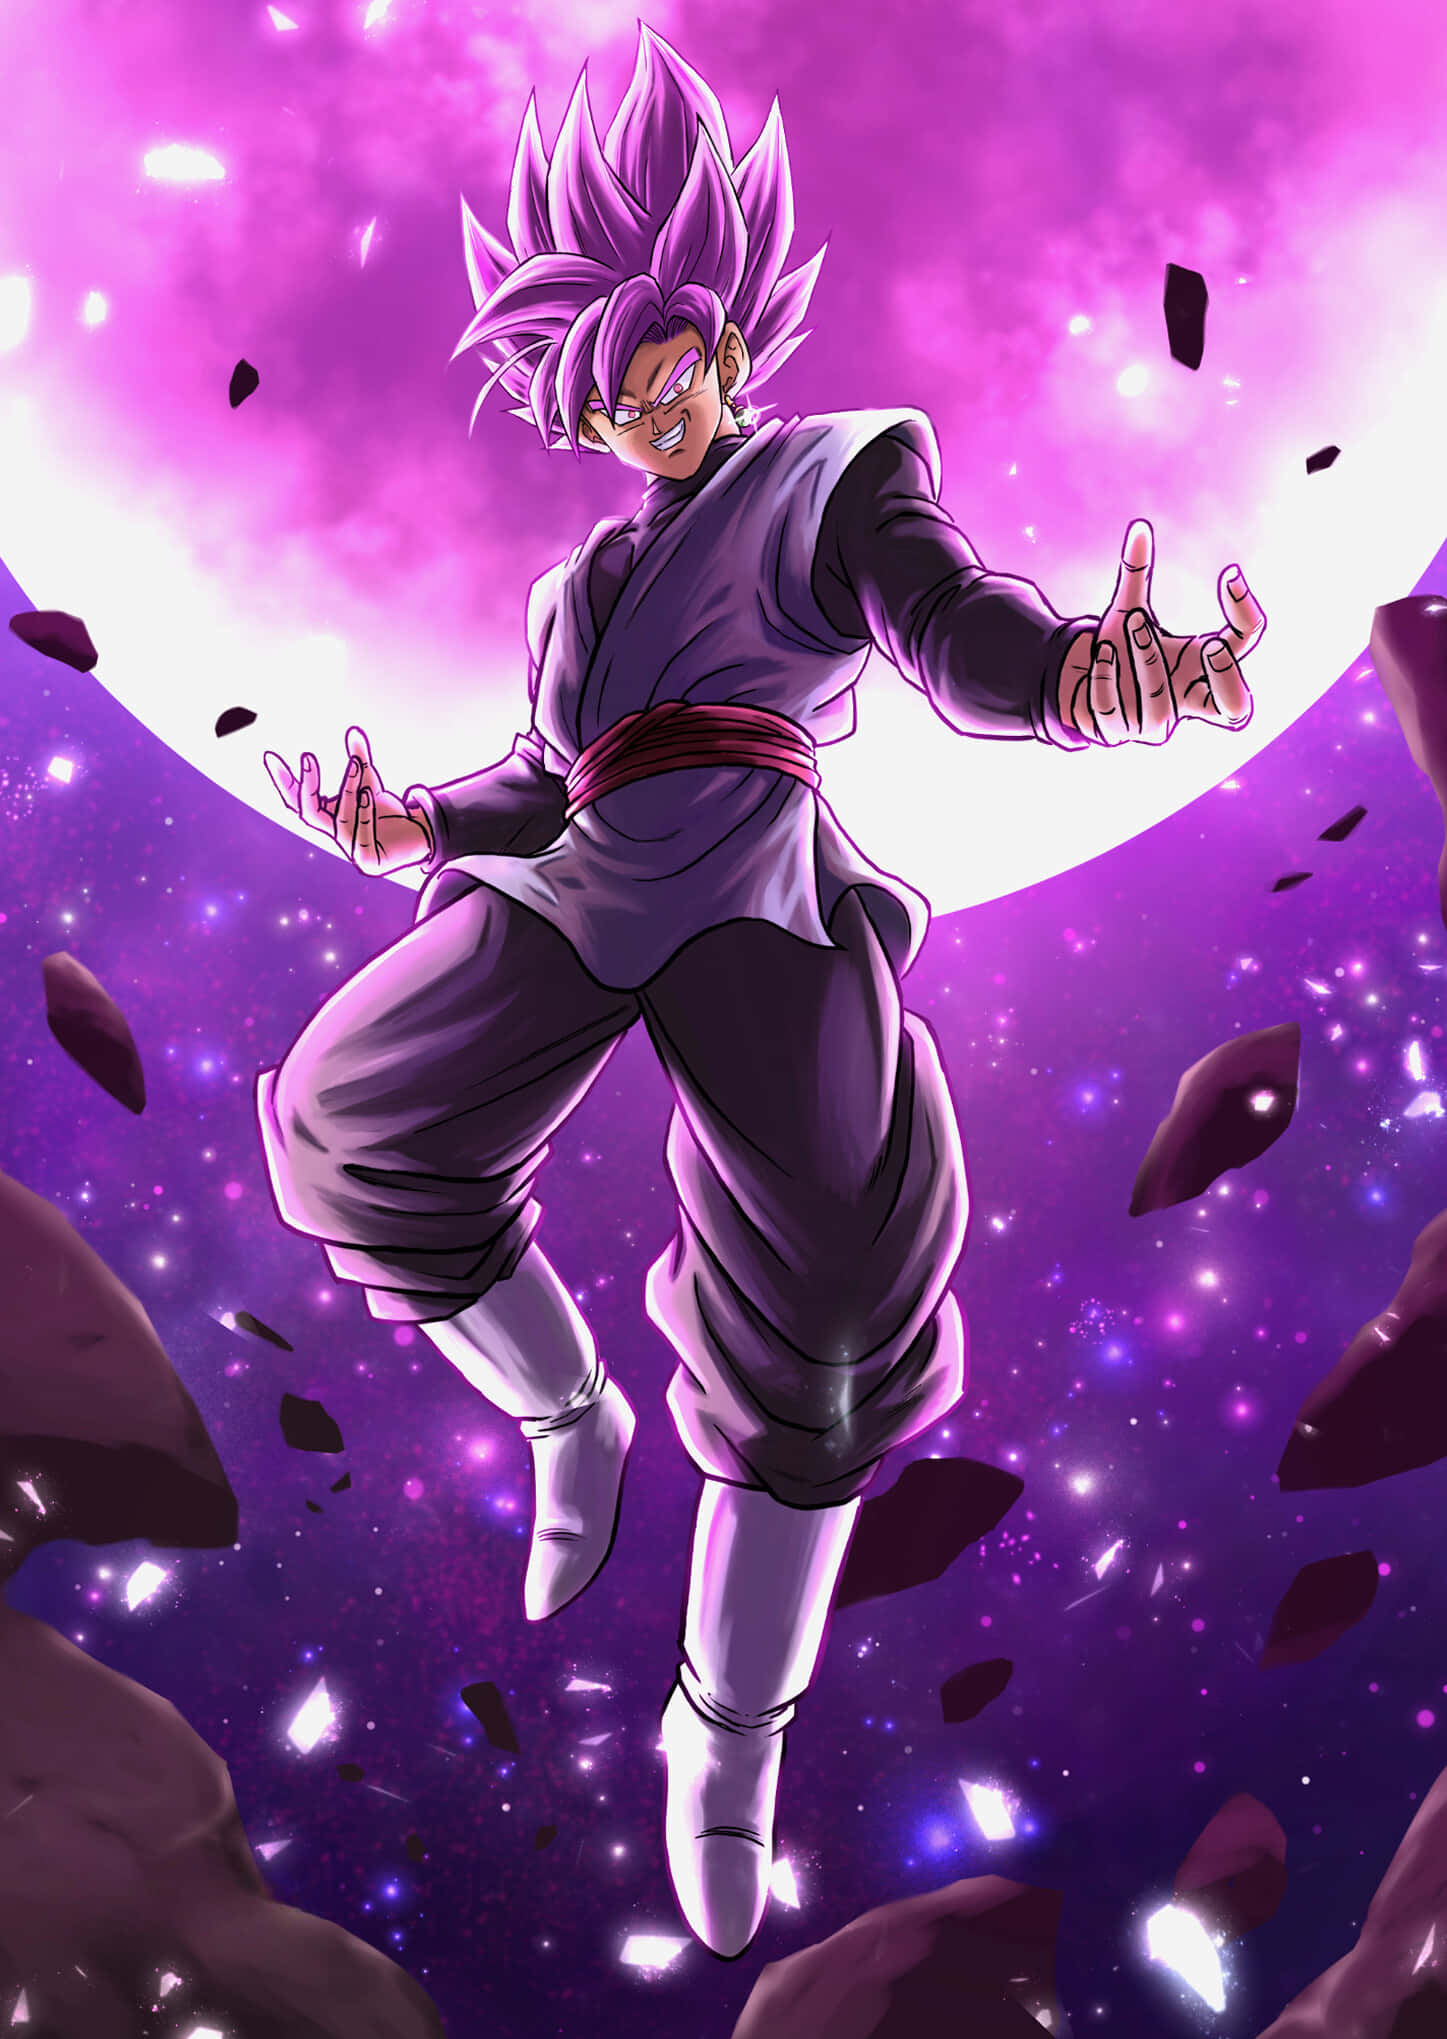 Goku Black charging into battle in Super Saiyan Rosé form